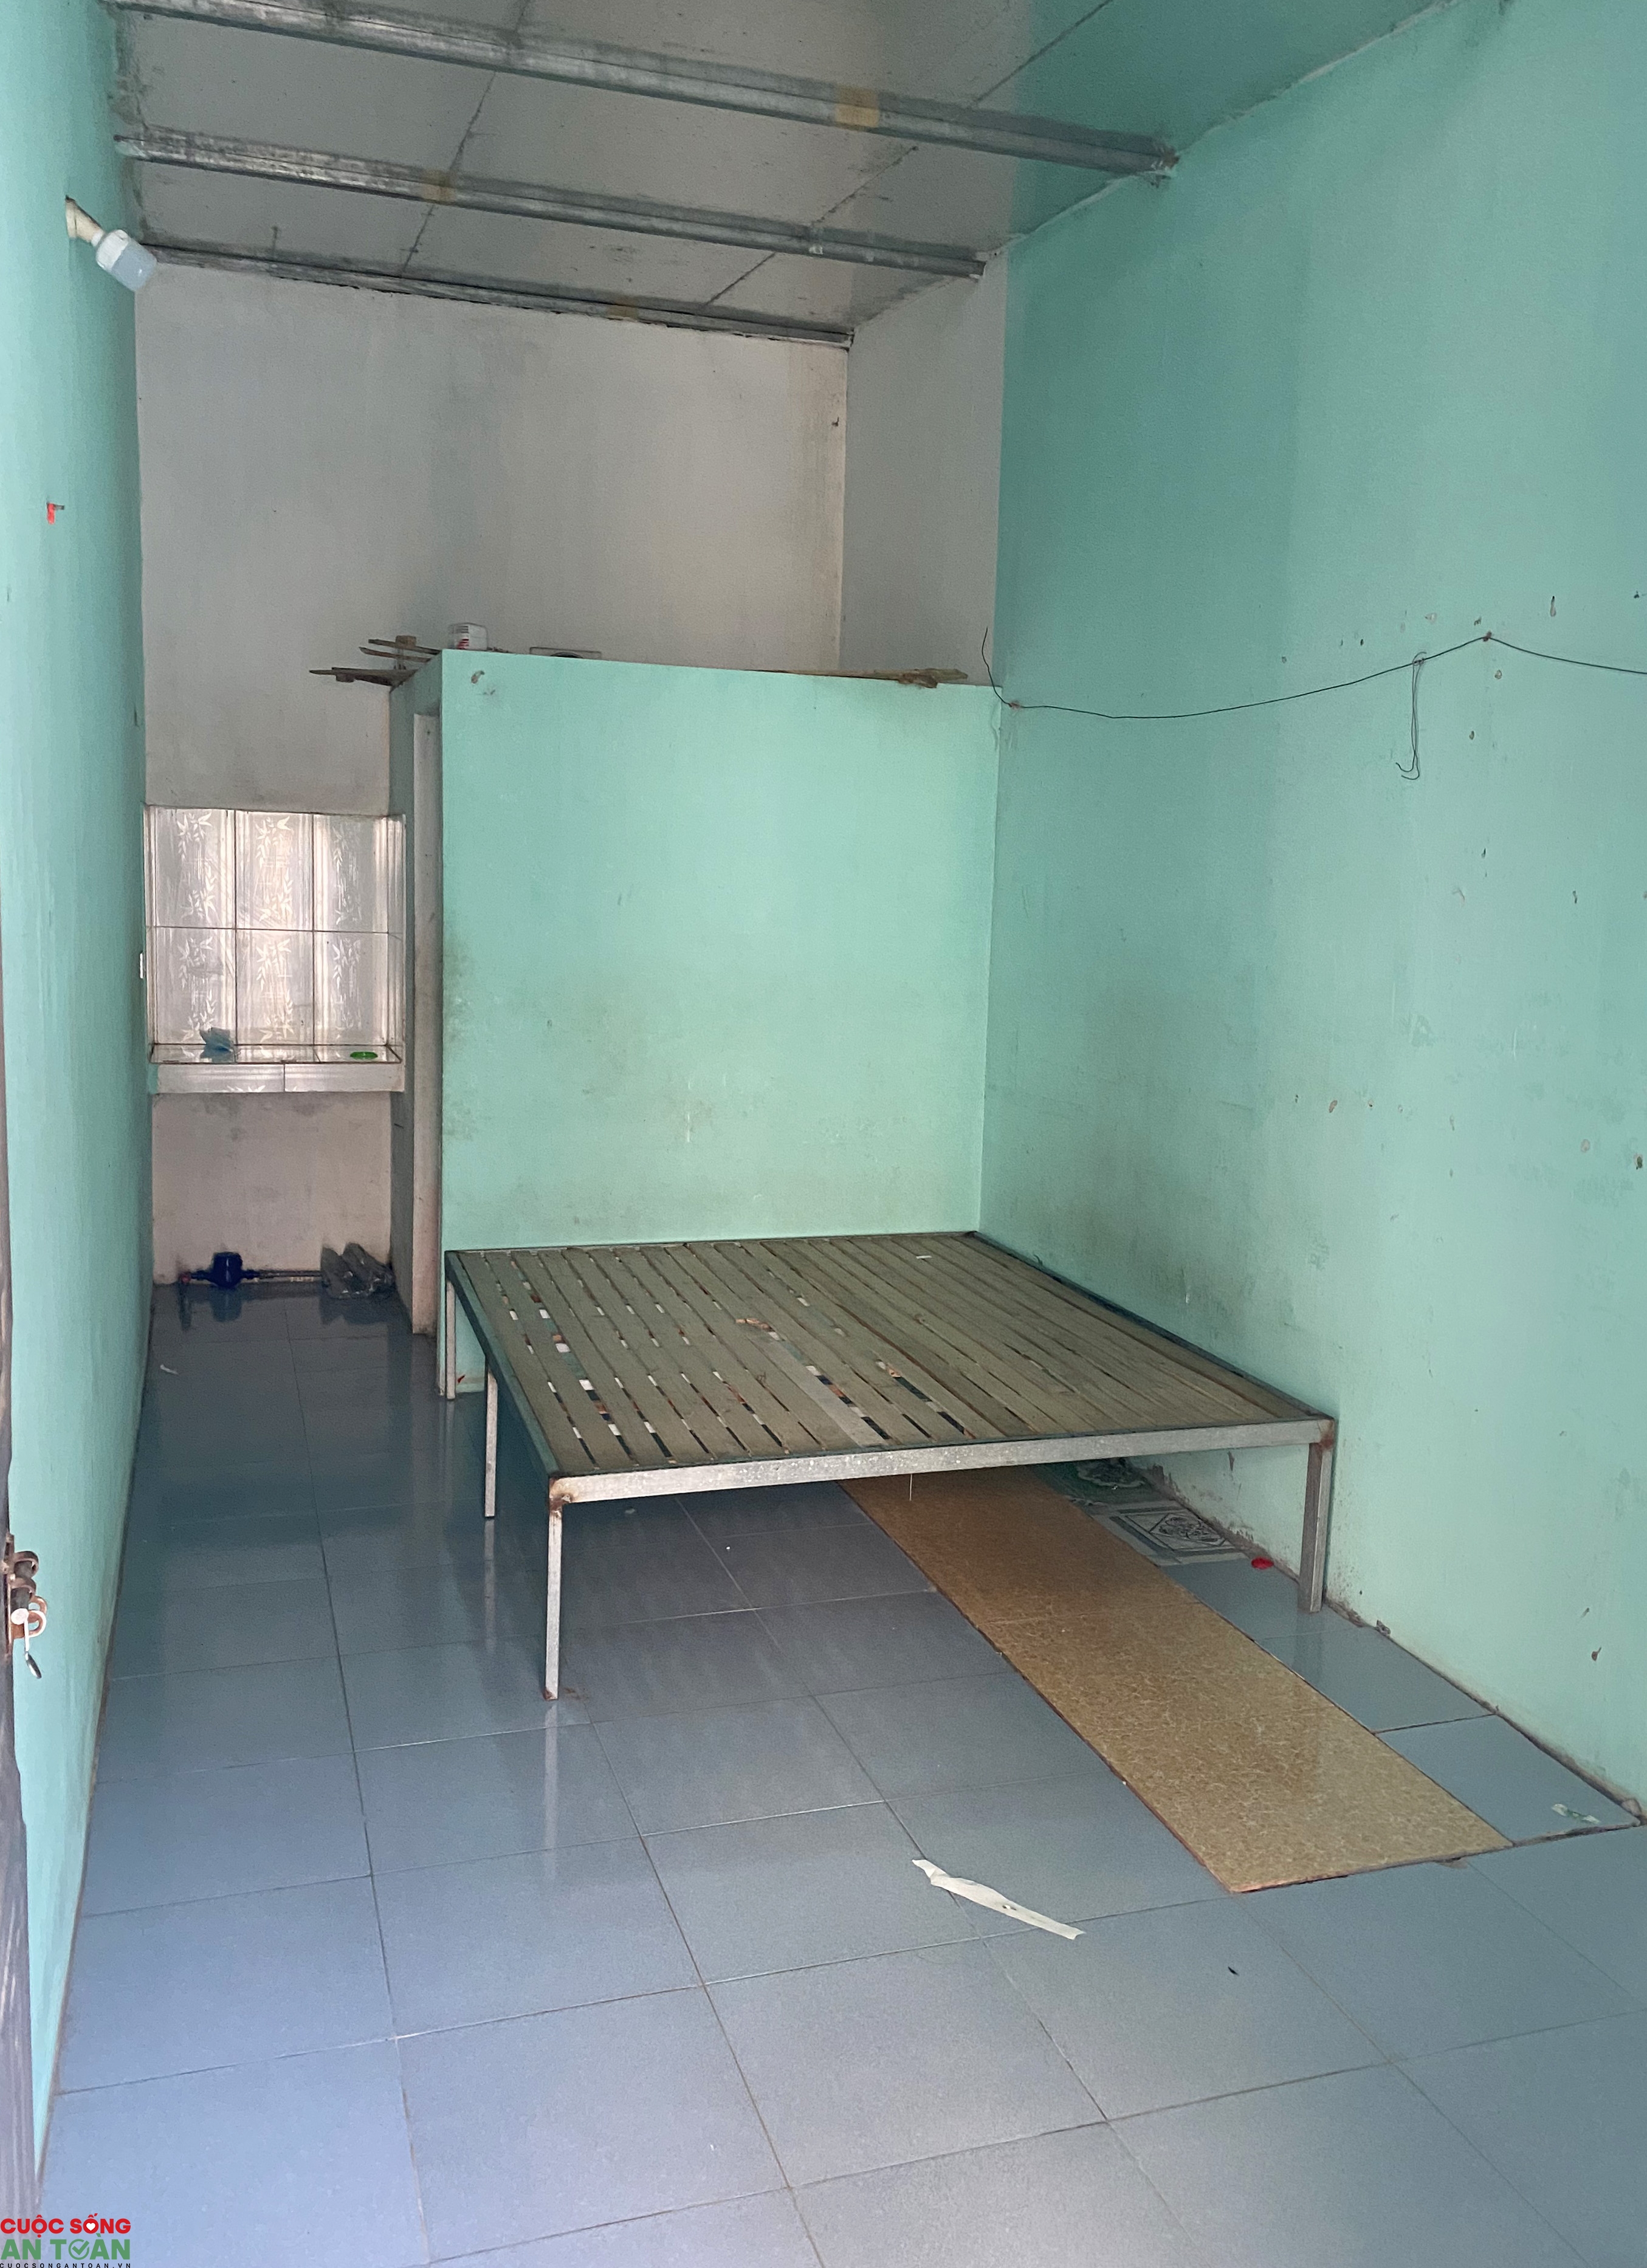 Vụ nữ công nhân chết trong phòng trọ ở Bắc Ninh: nhiều người hoang mang chuyển chỗ ở